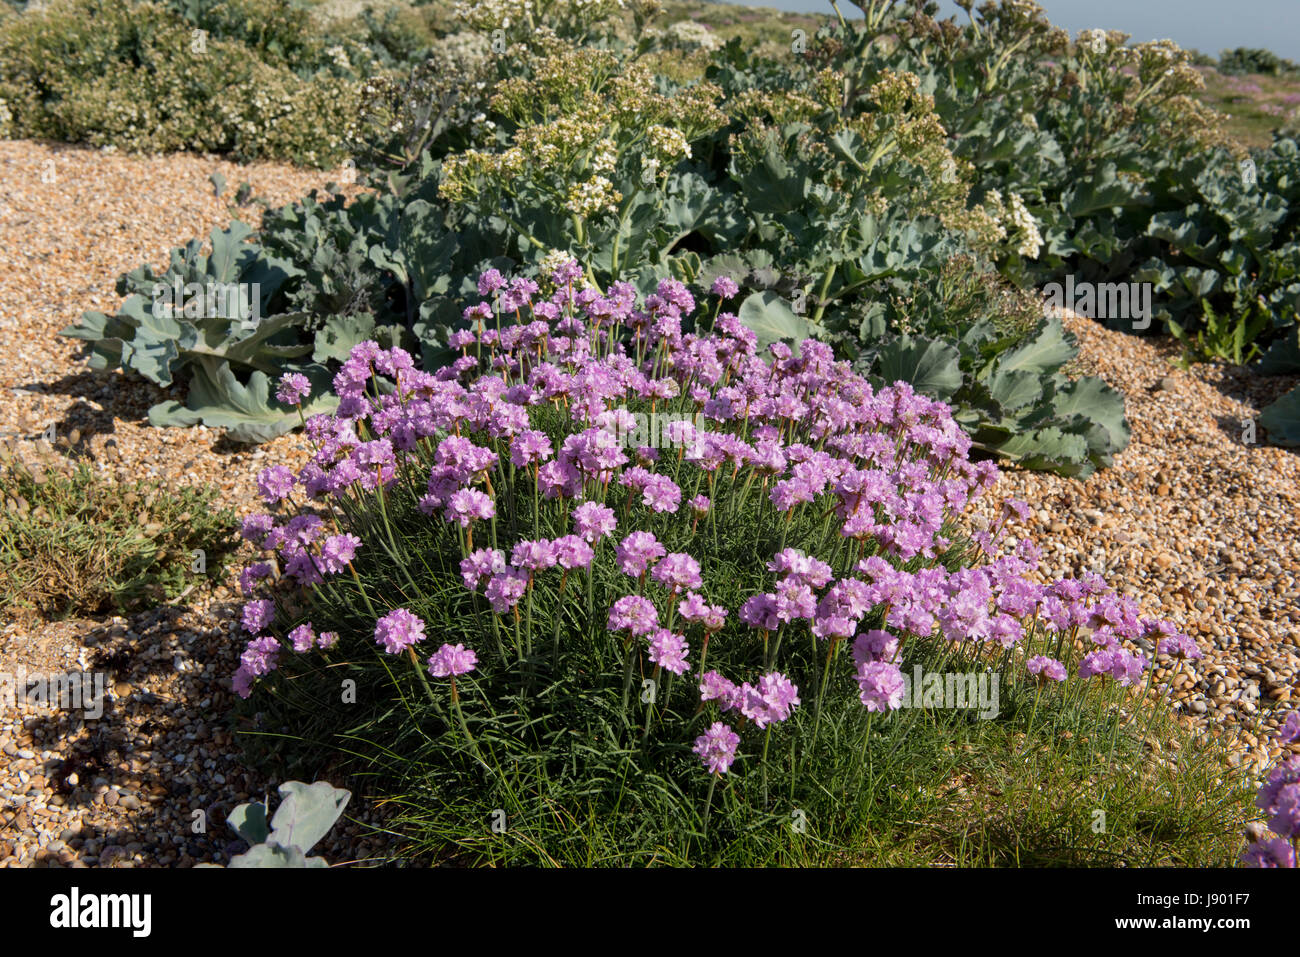 La parsimonia o mare parsimonia, Armeria maritima, fioritura sulla ghiaia con mare kale, Crambe maritima, a Chesil Beach in Dorset, può Foto Stock